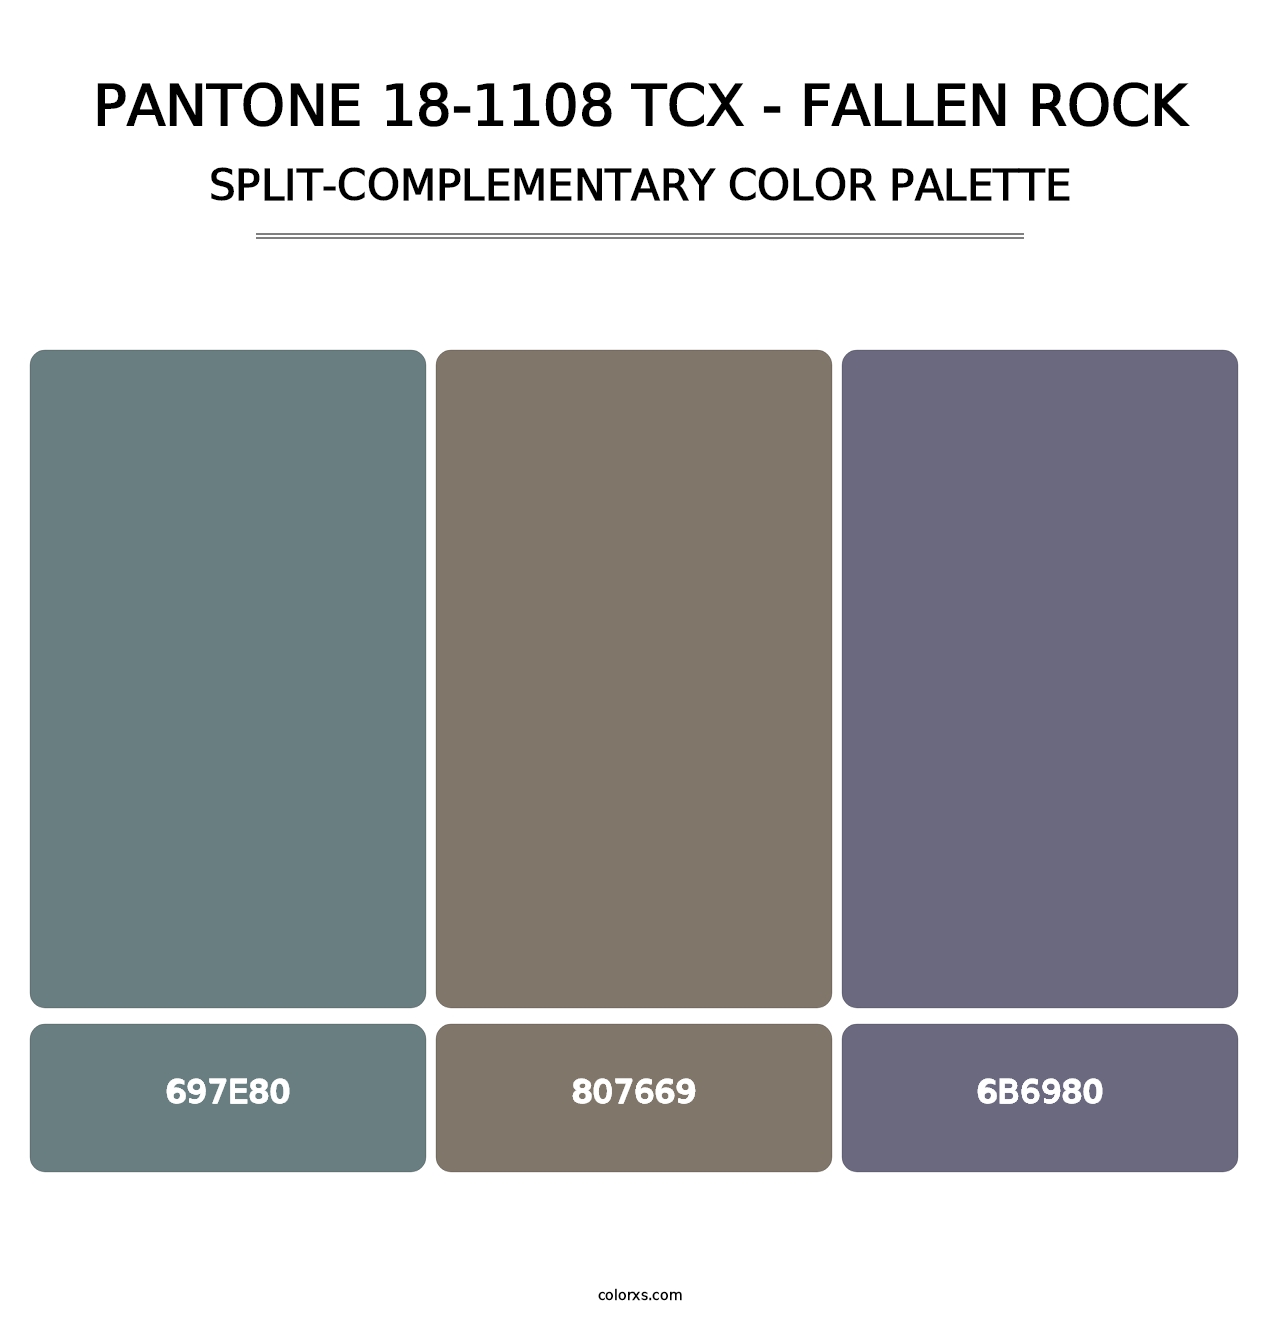 PANTONE 18-1108 TCX - Fallen Rock - Split-Complementary Color Palette